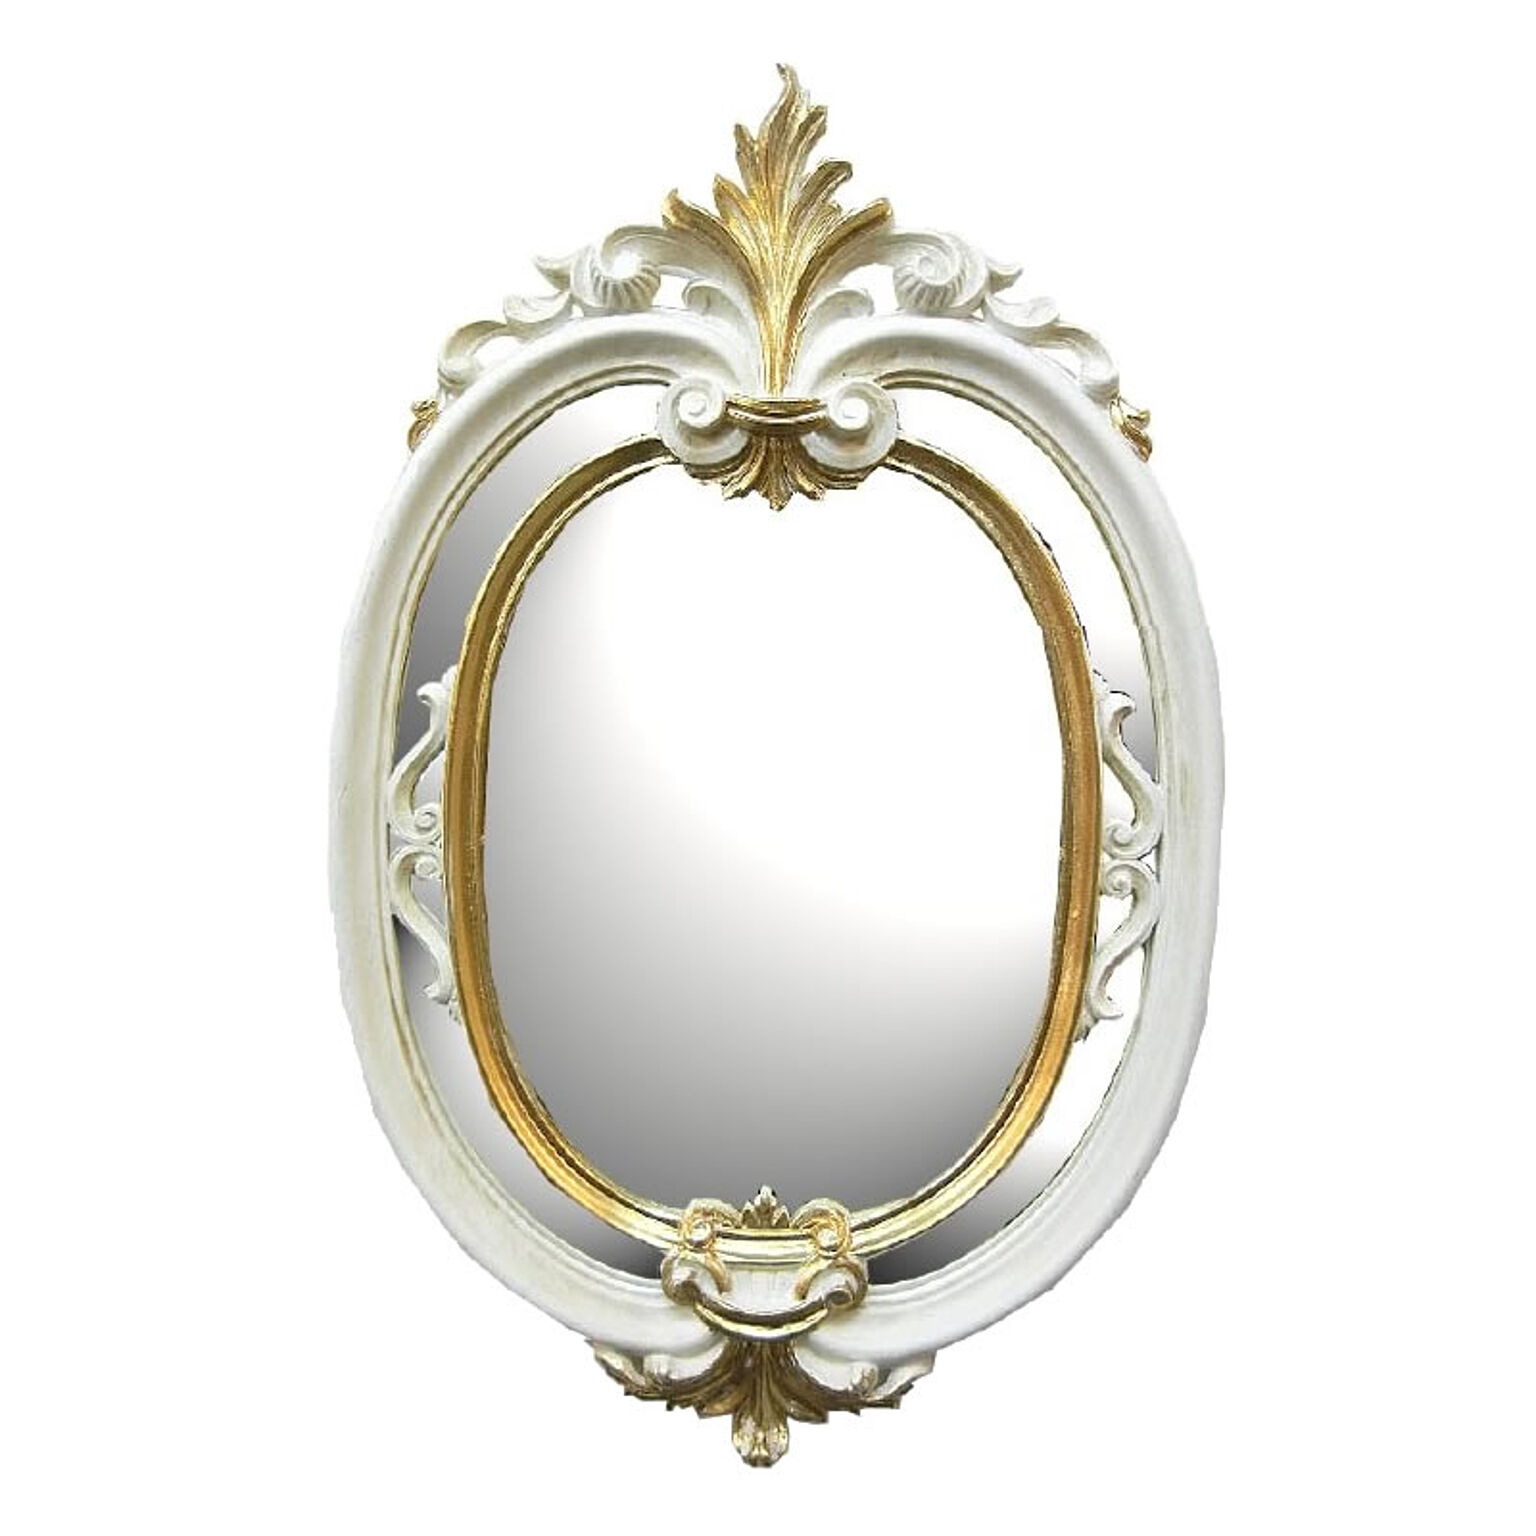 鏡 壁掛け イタリア製クラシックミラー Mirror アンティーク 鏡 ユーロマルキ